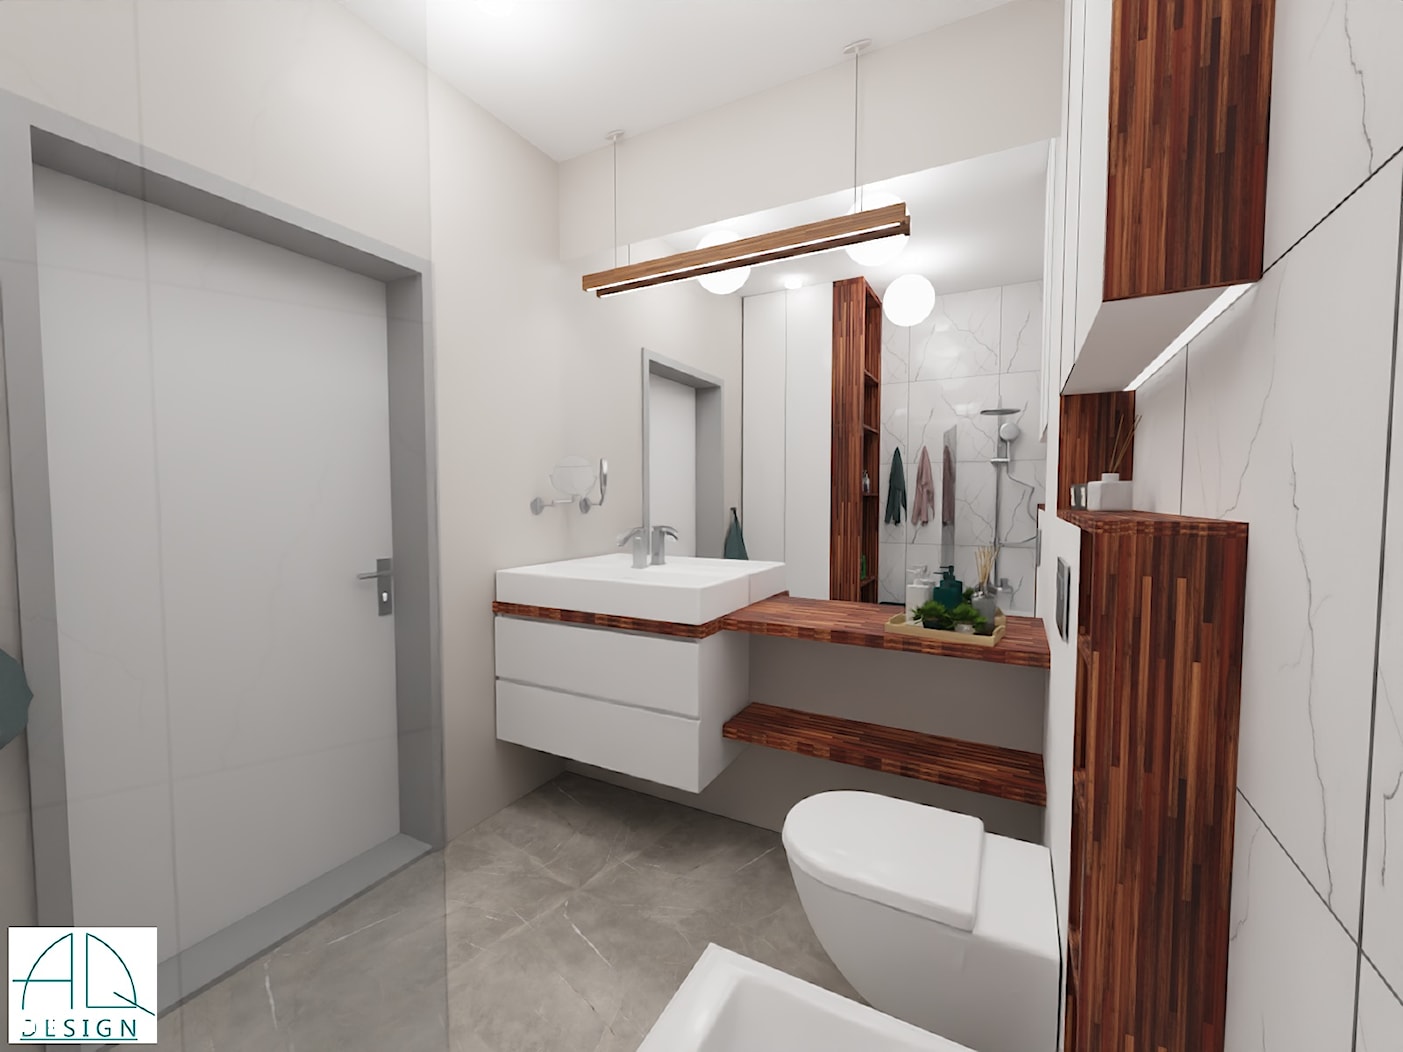 projekt łazienki ok 5m2 - ver.2 (wiosna 2020) - Łazienka, styl minimalistyczny - zdjęcie od AQ Design - Homebook